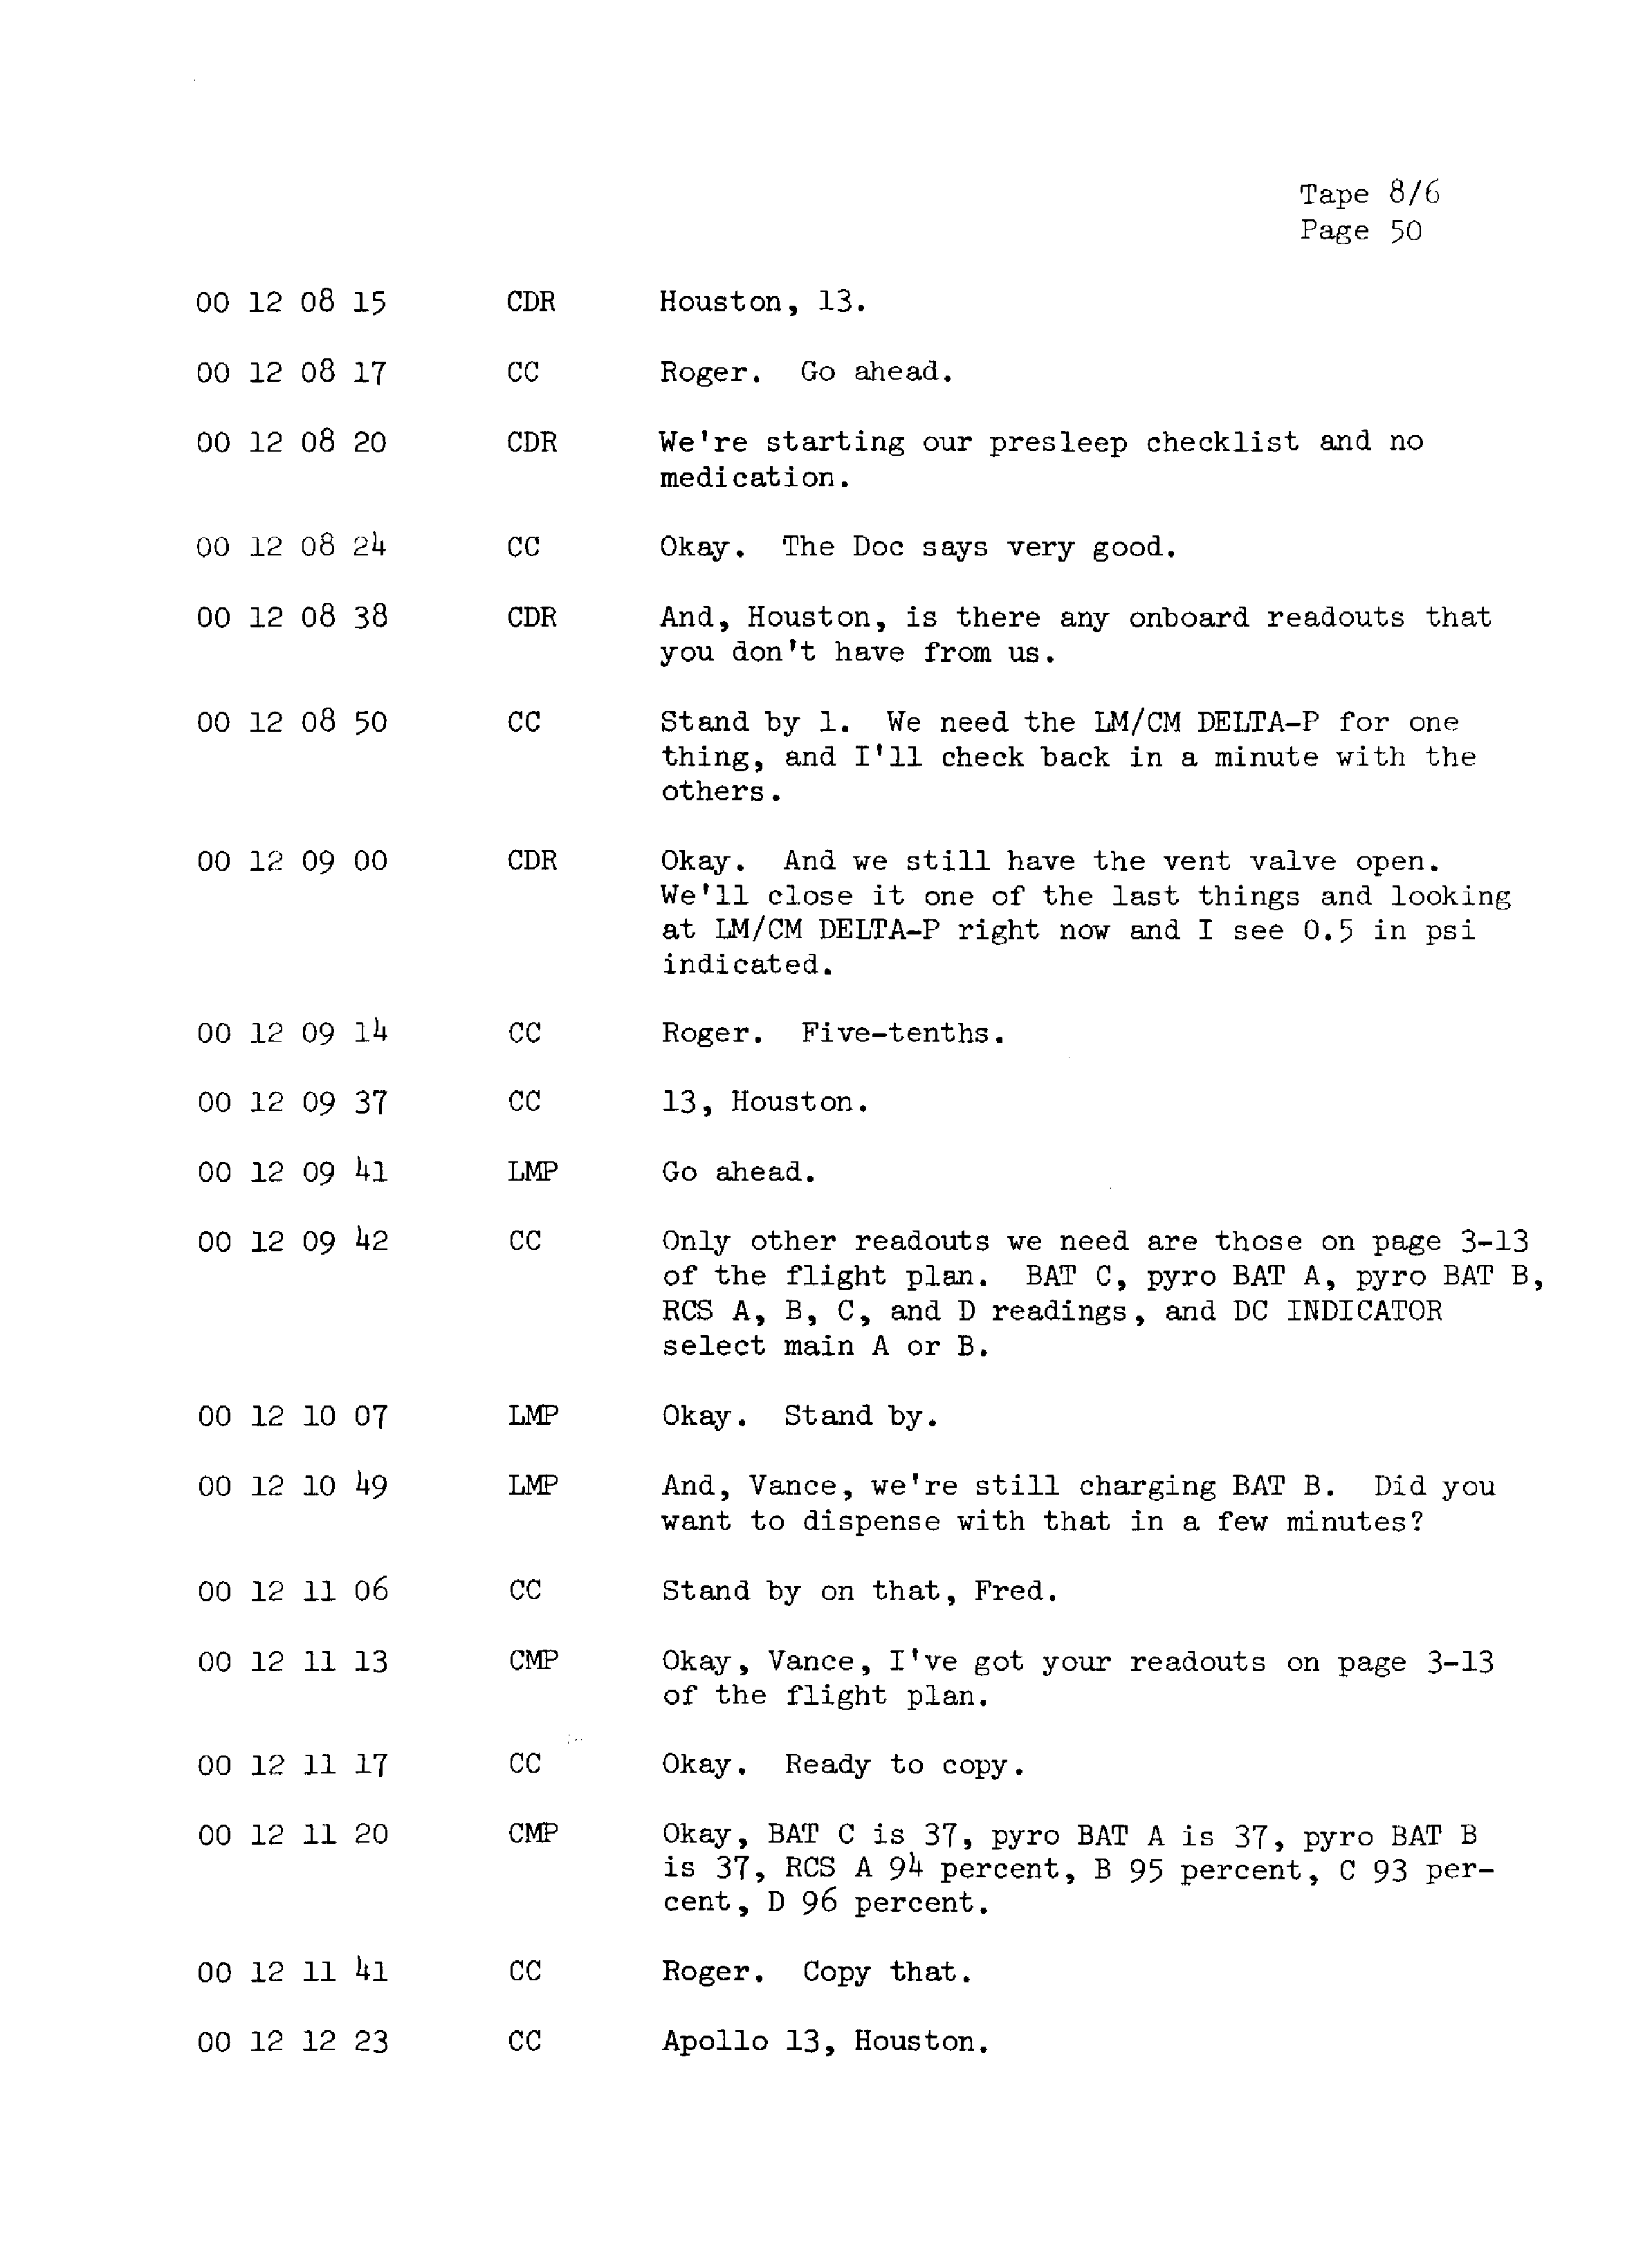 Page 57 of Apollo 13’s original transcript